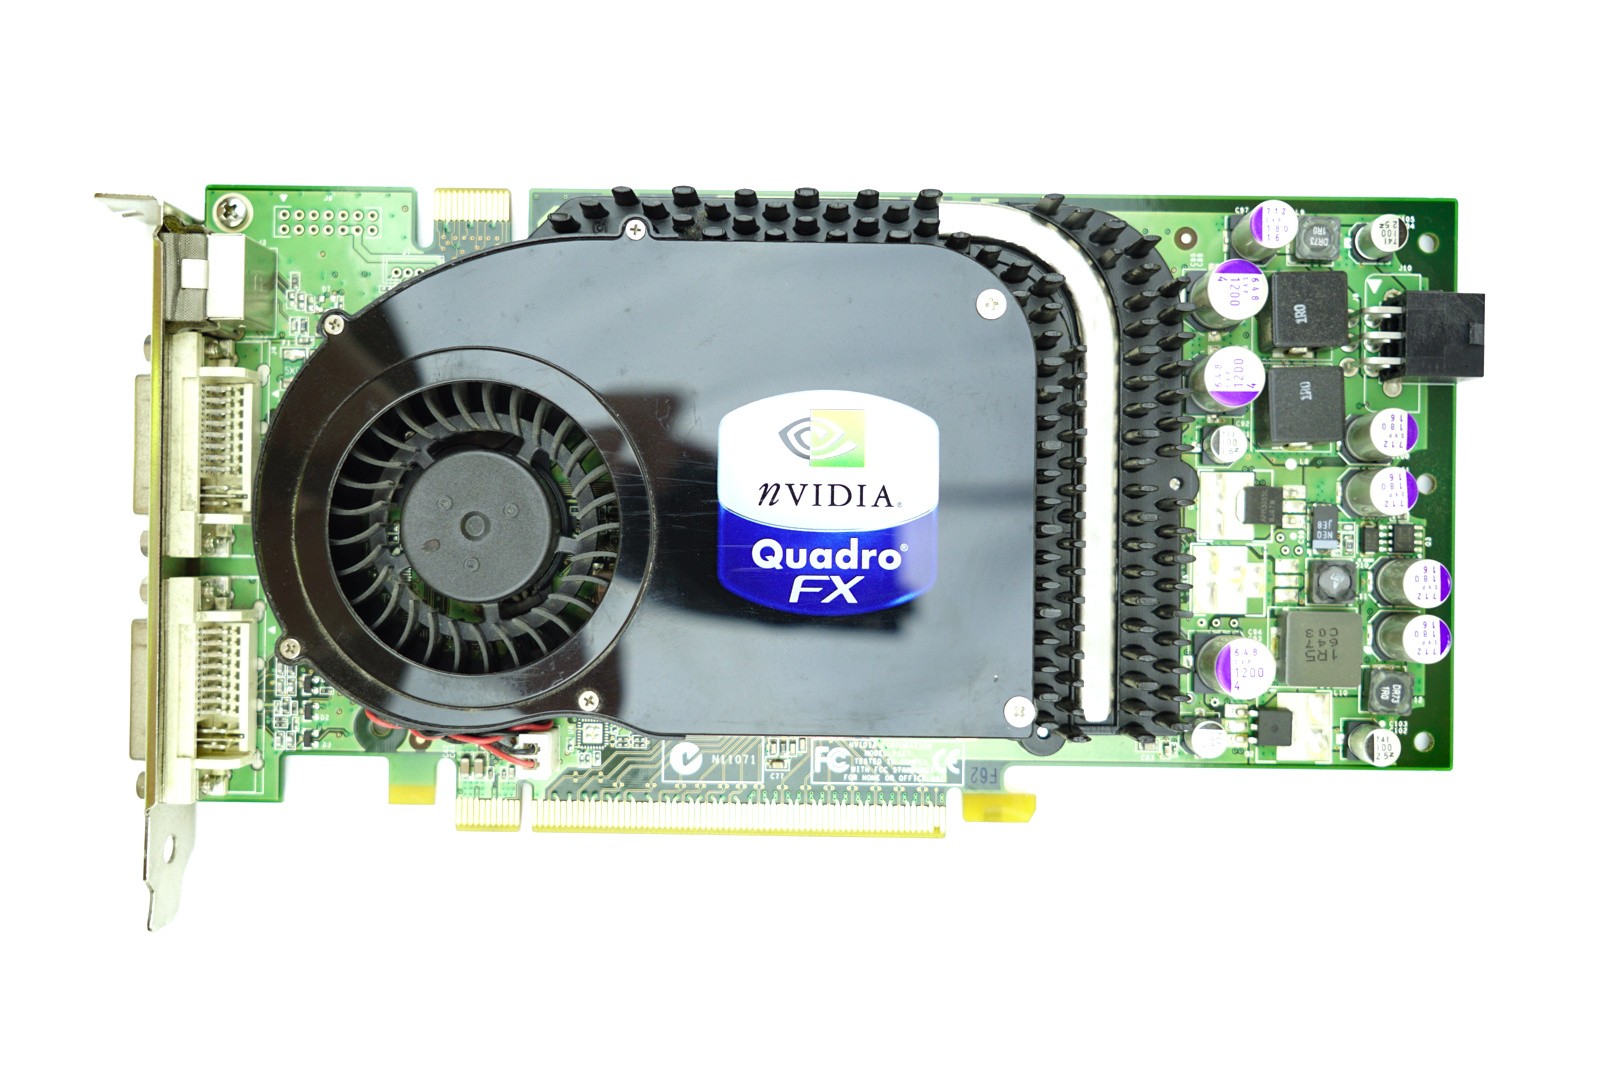 Dell nVidia Quadro FX3450 - 256MB GDDR3 PCIe-x16 FH